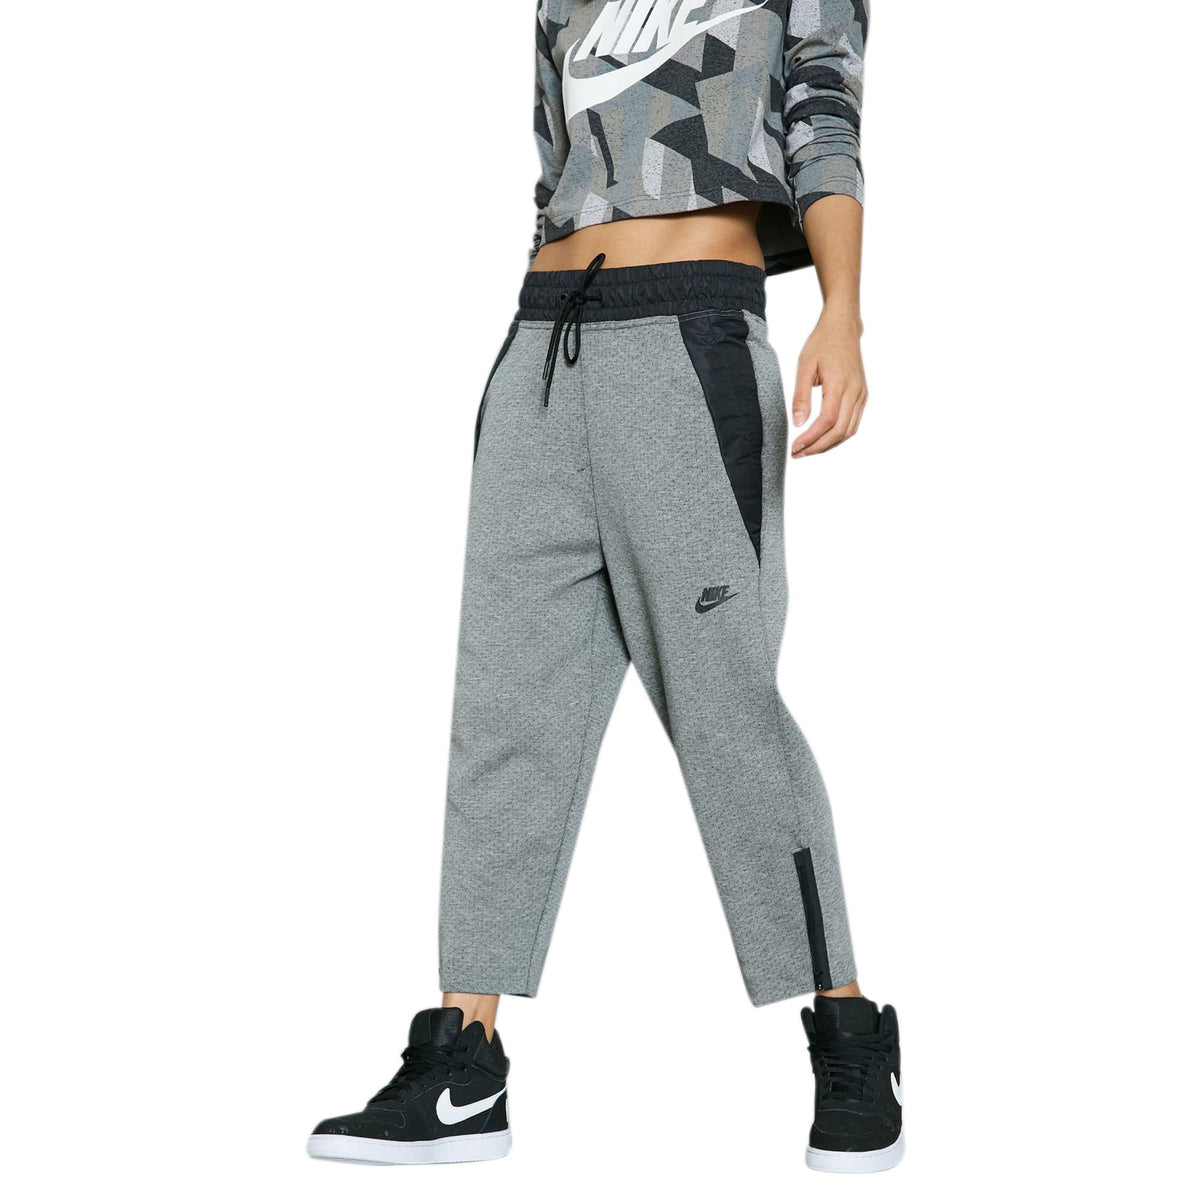 Me Komkommer kort Nike Sportswear Tech Fleece Women's Crop Pants Carbon Heather-Black